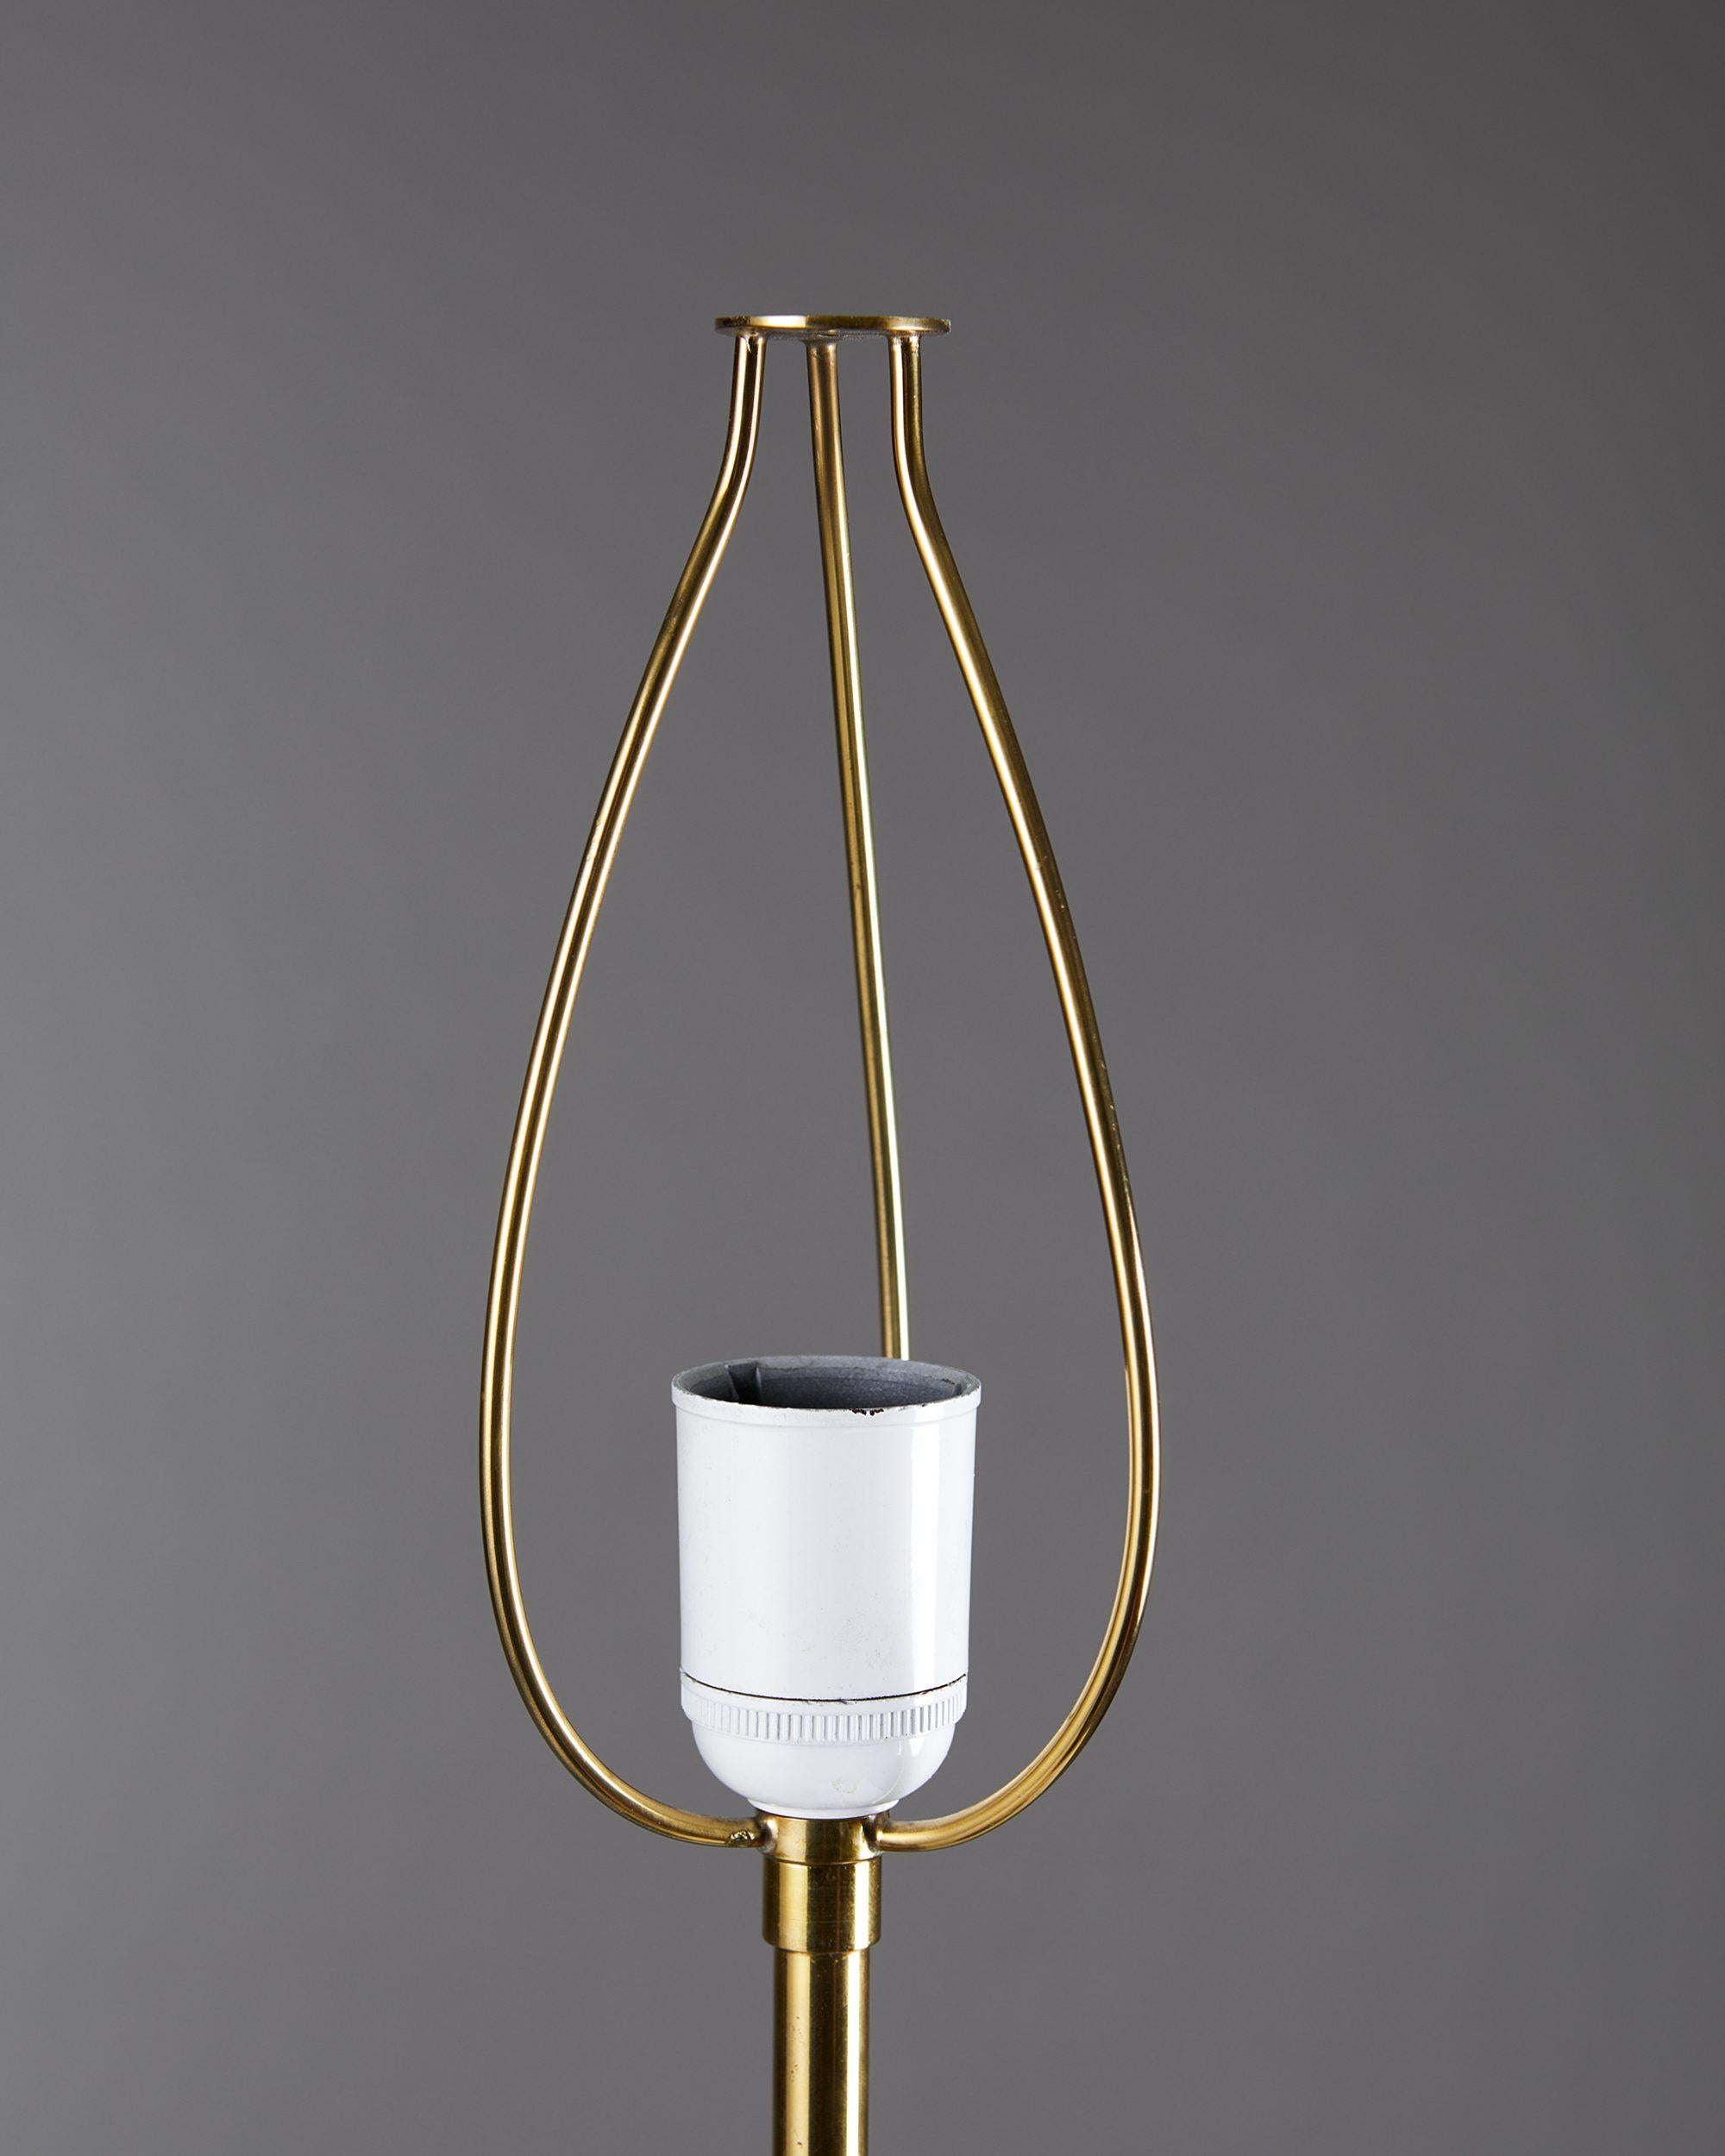 Table Lamp Model 2466 Designed by Josef Frank for Svenskt Tenn 1